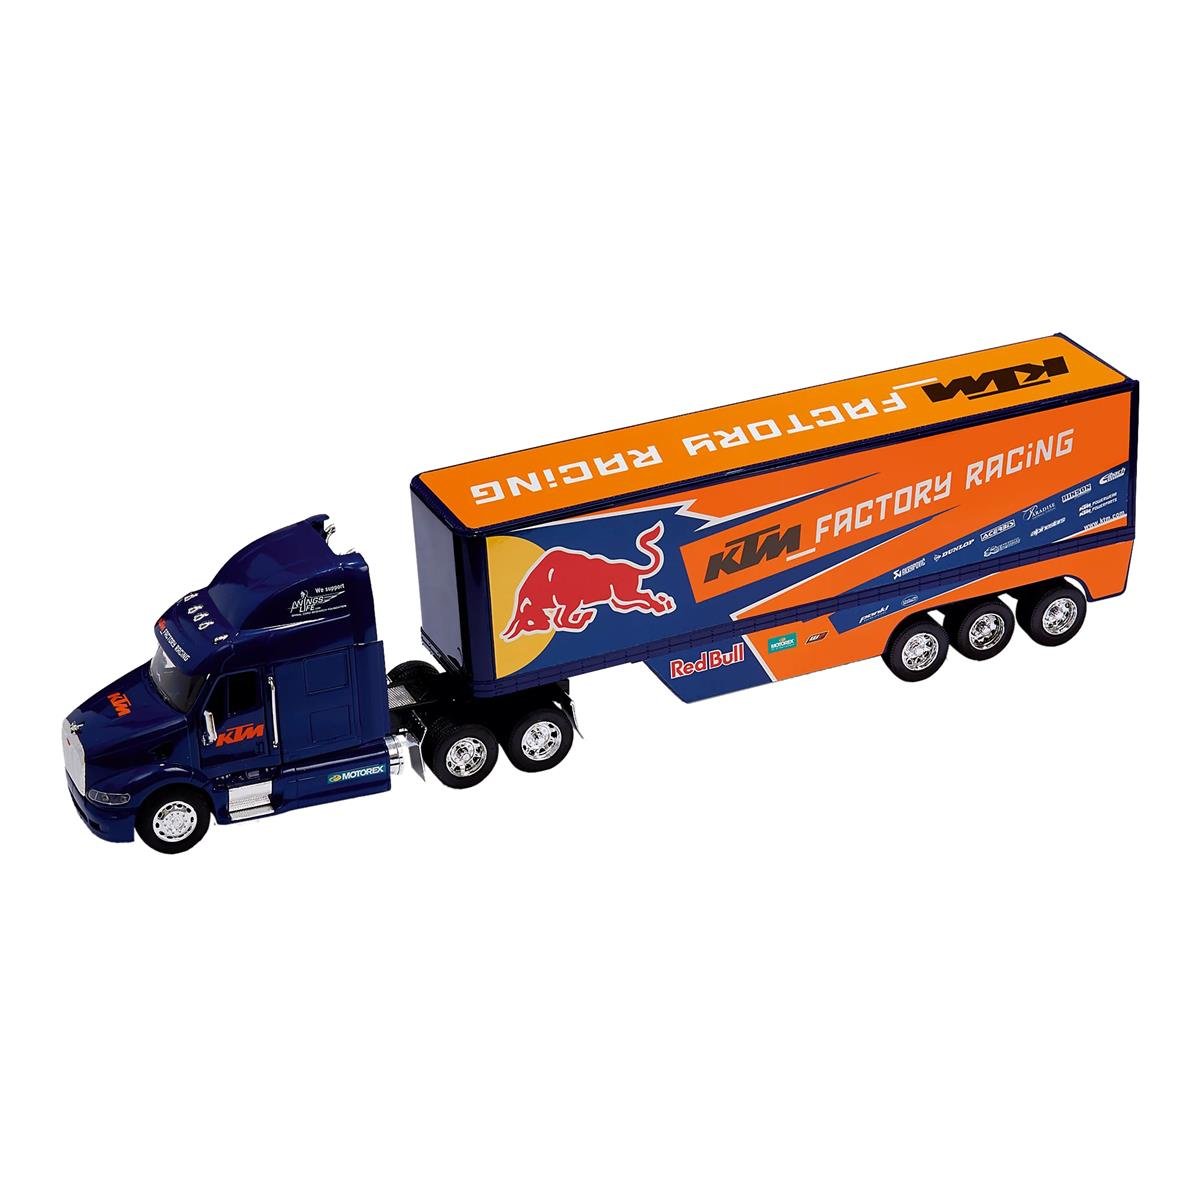 Red Bull Truckmodell